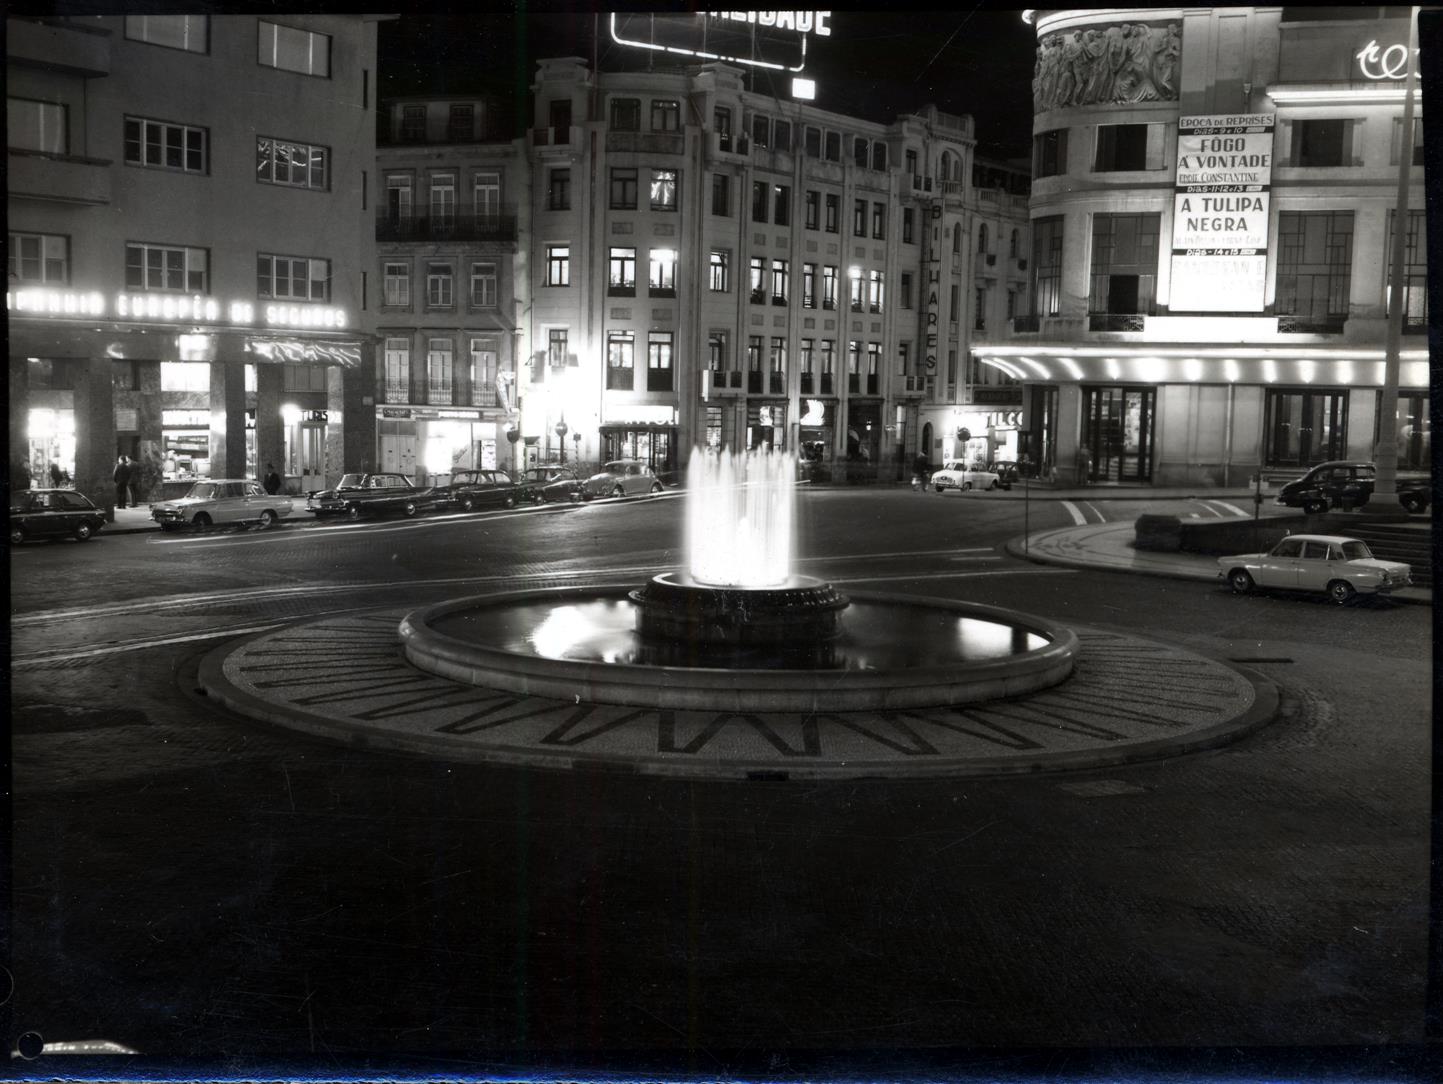 Fonte Luminosa da Praça D. João I : noturna